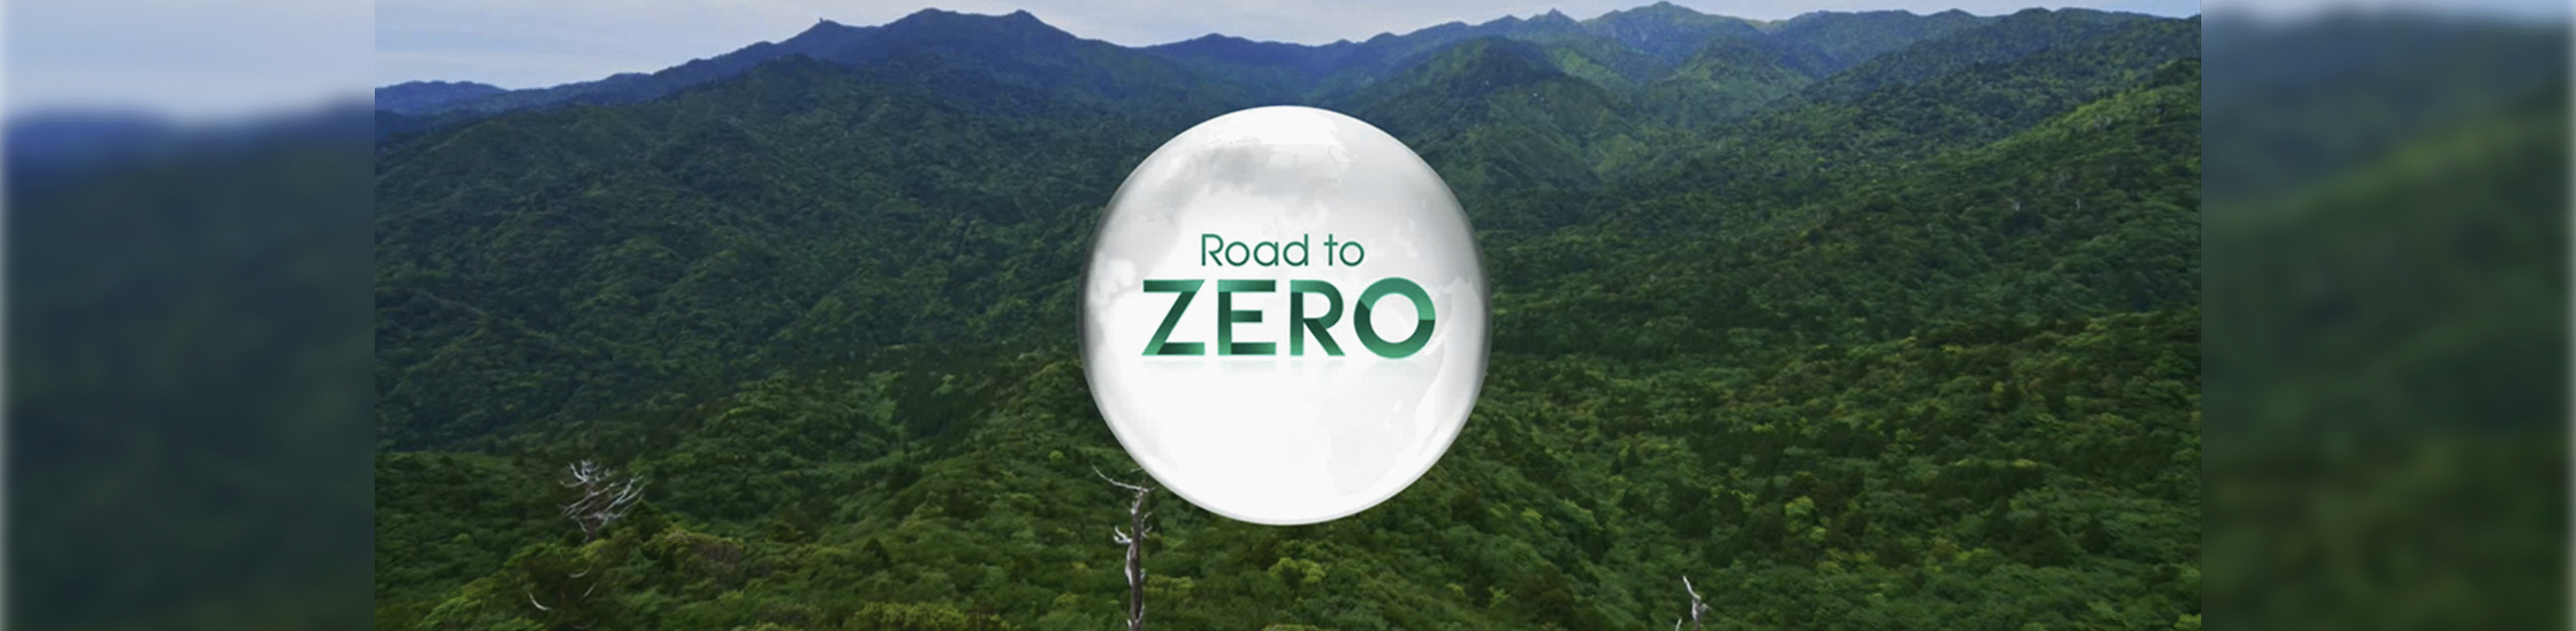 Logo Road to ZERO